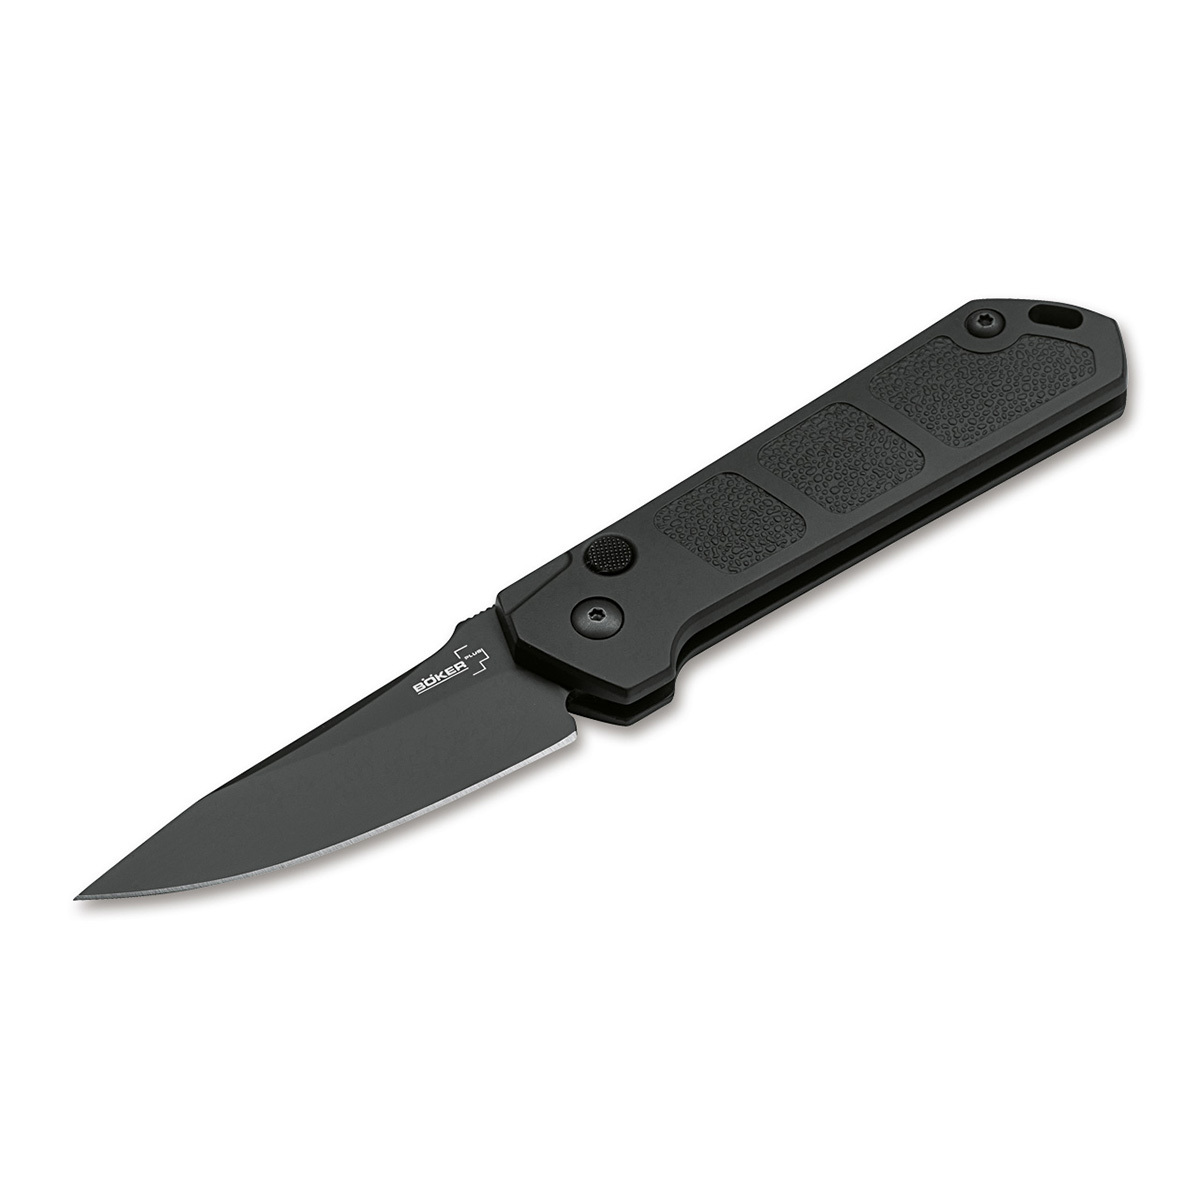 Нож автоматический складной Boker Kihon auto black, сталь AUS8, рукоять алюминий складной автоматический нож hornet